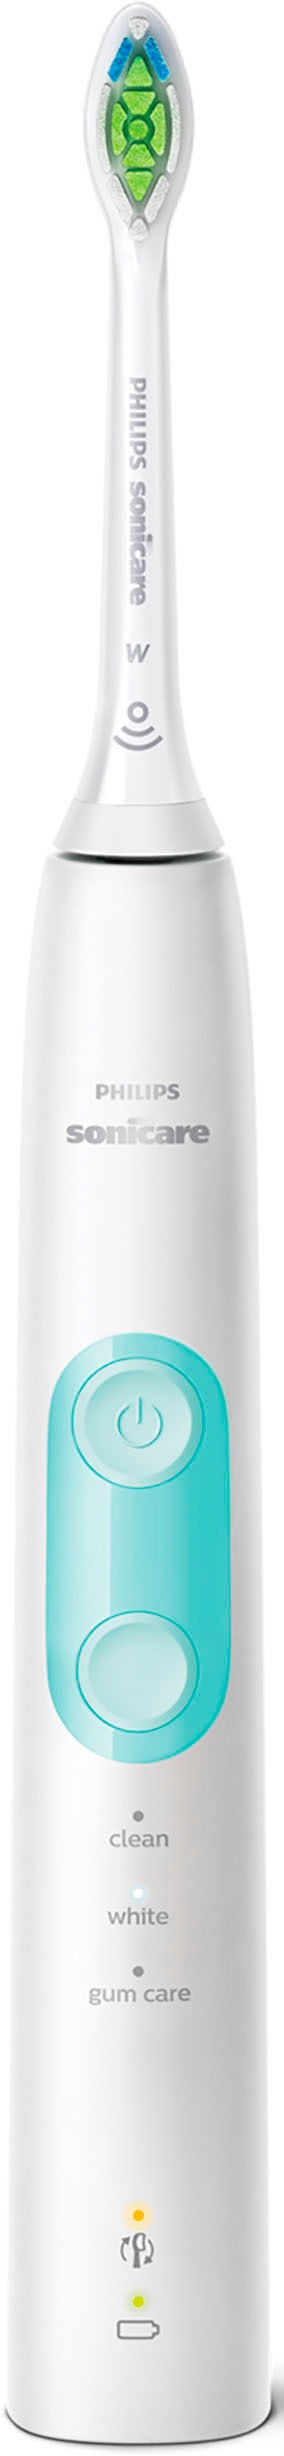 Philips Sonicare Elektrische Zahnbürste »ProtectiveClean 5100 HX6851/34«, 2 St. Aufsteckbürsten, mit Schalltechnologie, 3 Putzprogramme, Reiseetui